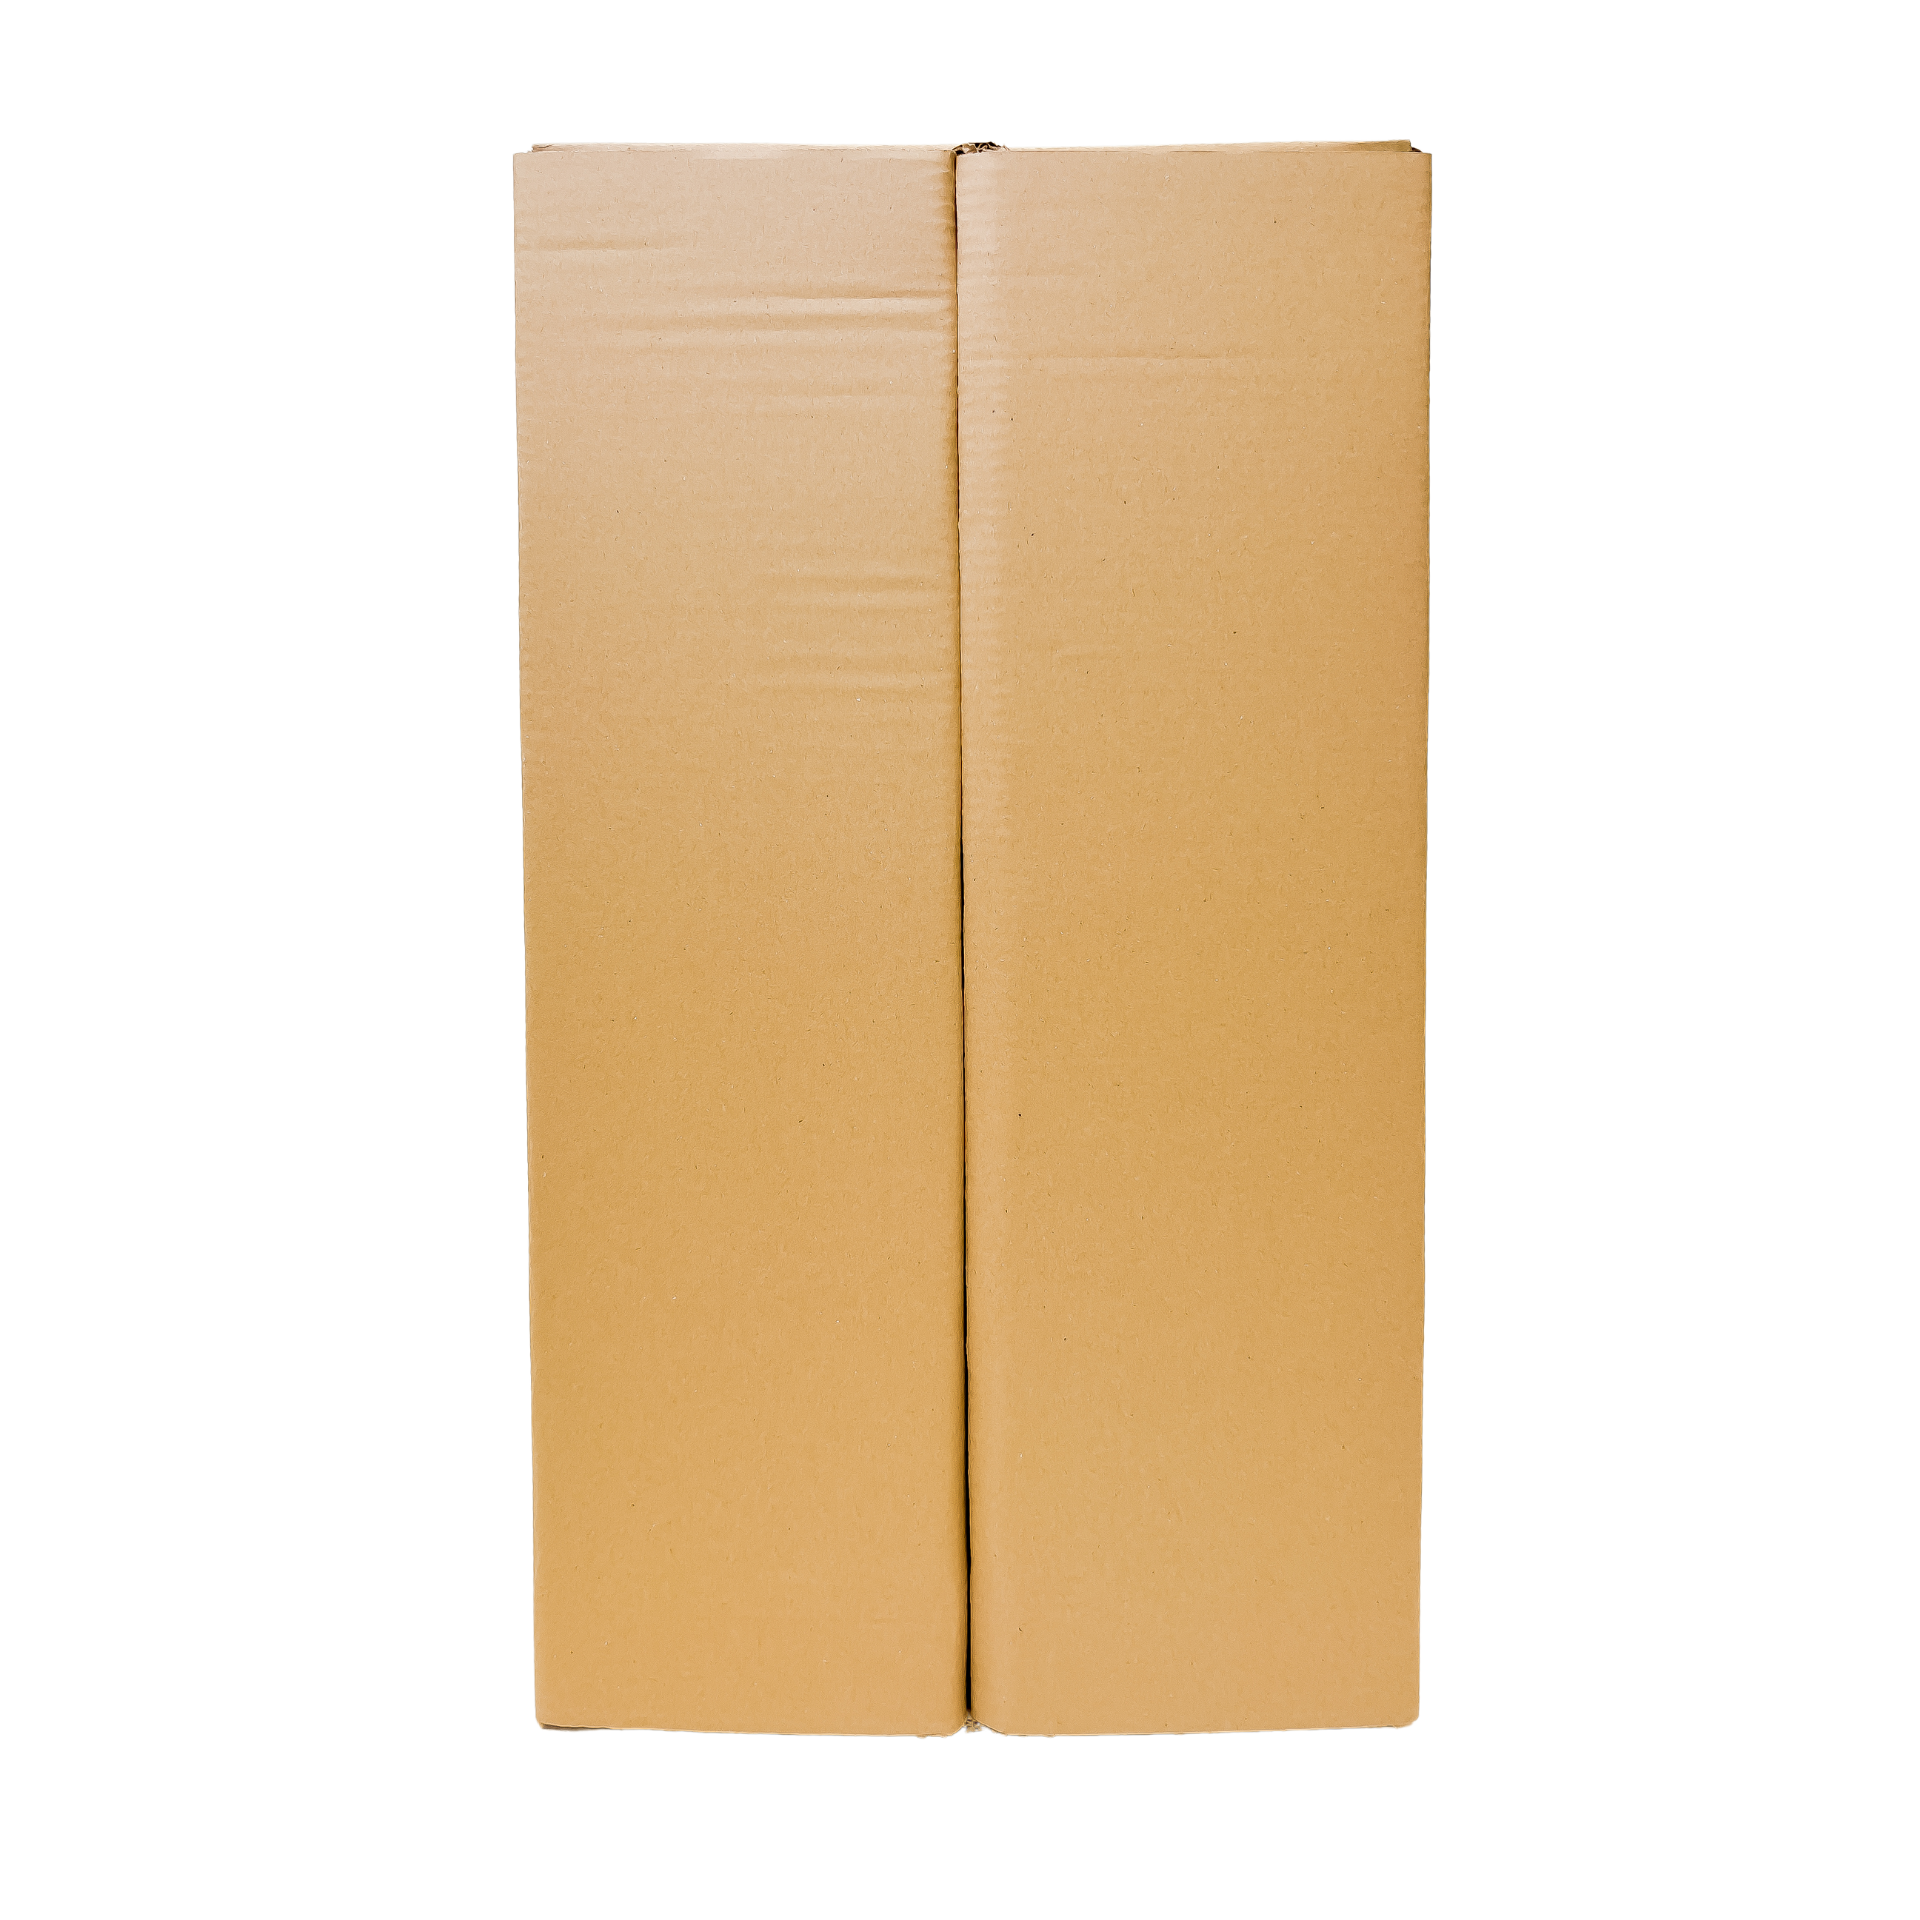 Karton do przeprowadzki (663x361x402) - movePACK  - HURT